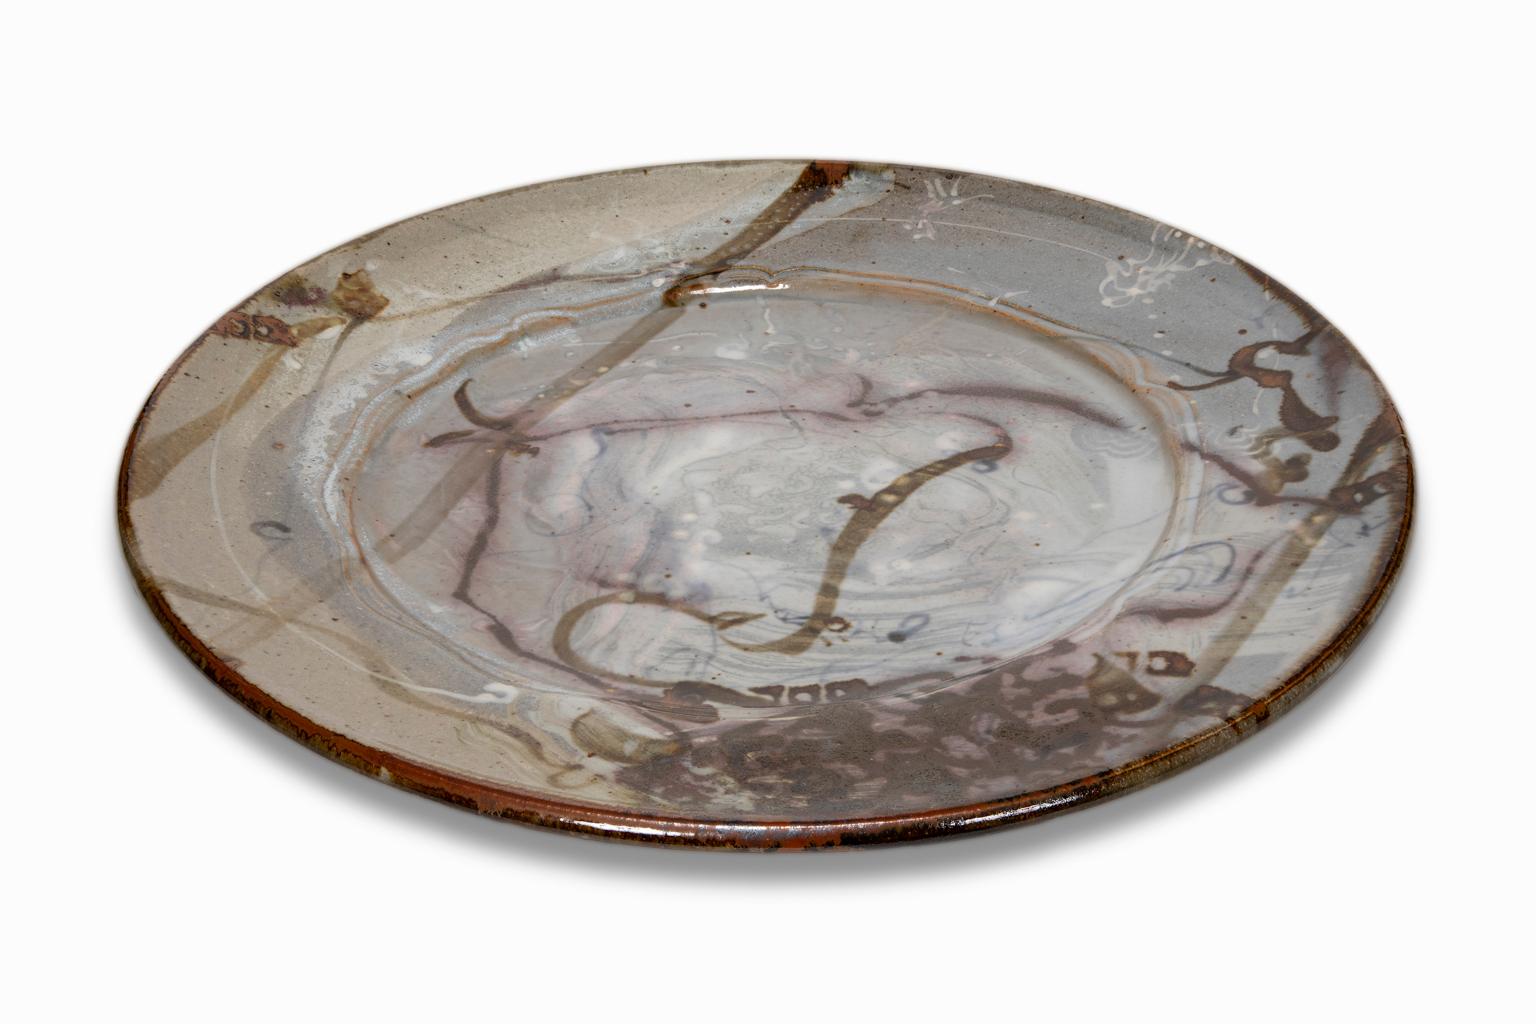 Das Keramik-Ladegerät ist ein Beispiel für die Art von Arbeiten, mit denen John Glick so berühmt wurde. Er war fasziniert von den Effekten des Reduktionsofens, der den Sauerstoffgehalt während des Brennvorgangs senkt und die Flamme dazu veranlasst,